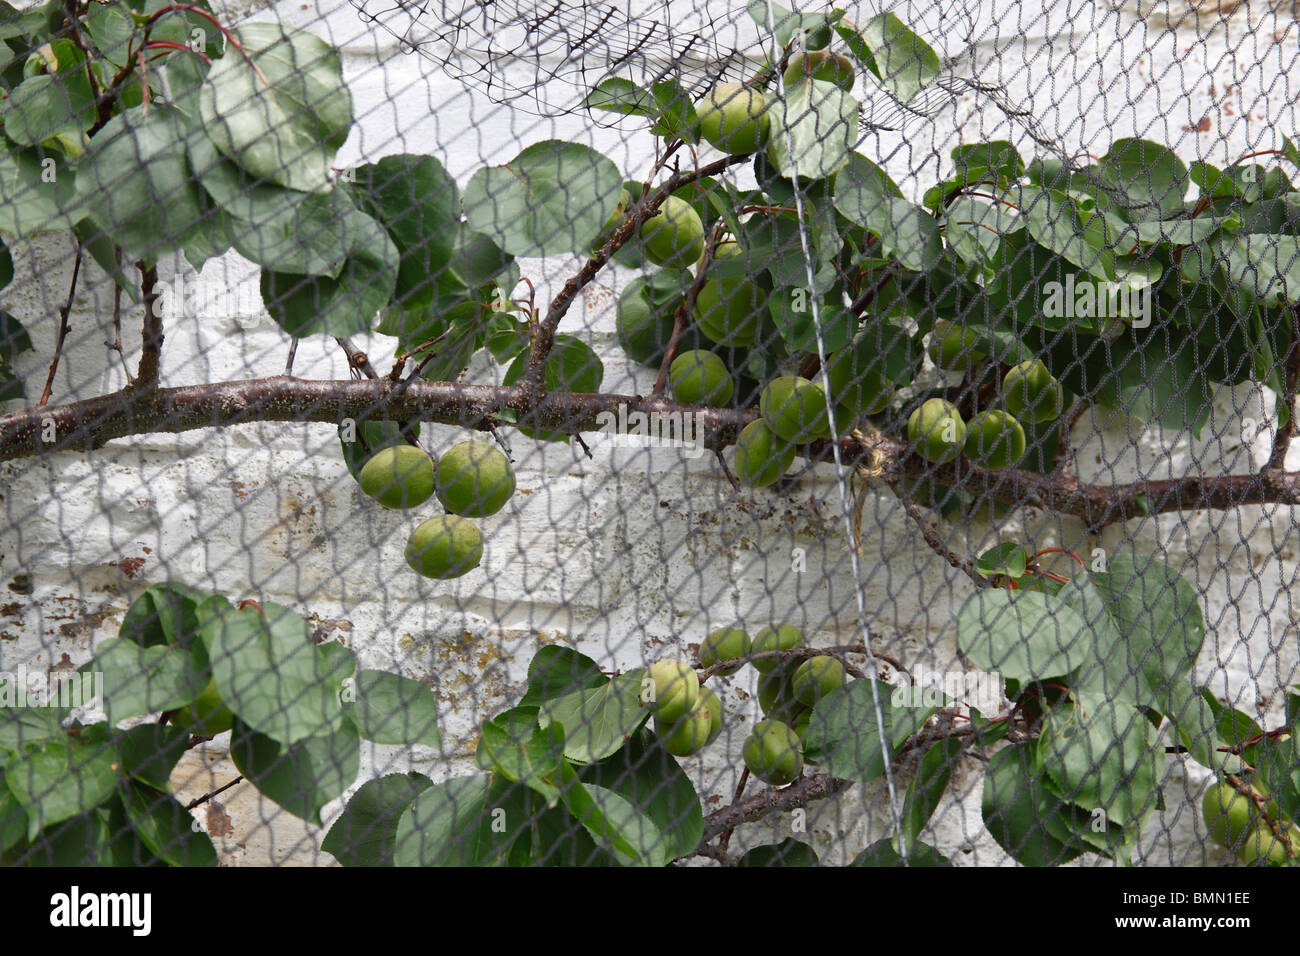 Aoricot (Prunus armeniaca) Moorpark madurando en el árbol detrás de red protectora Foto de stock